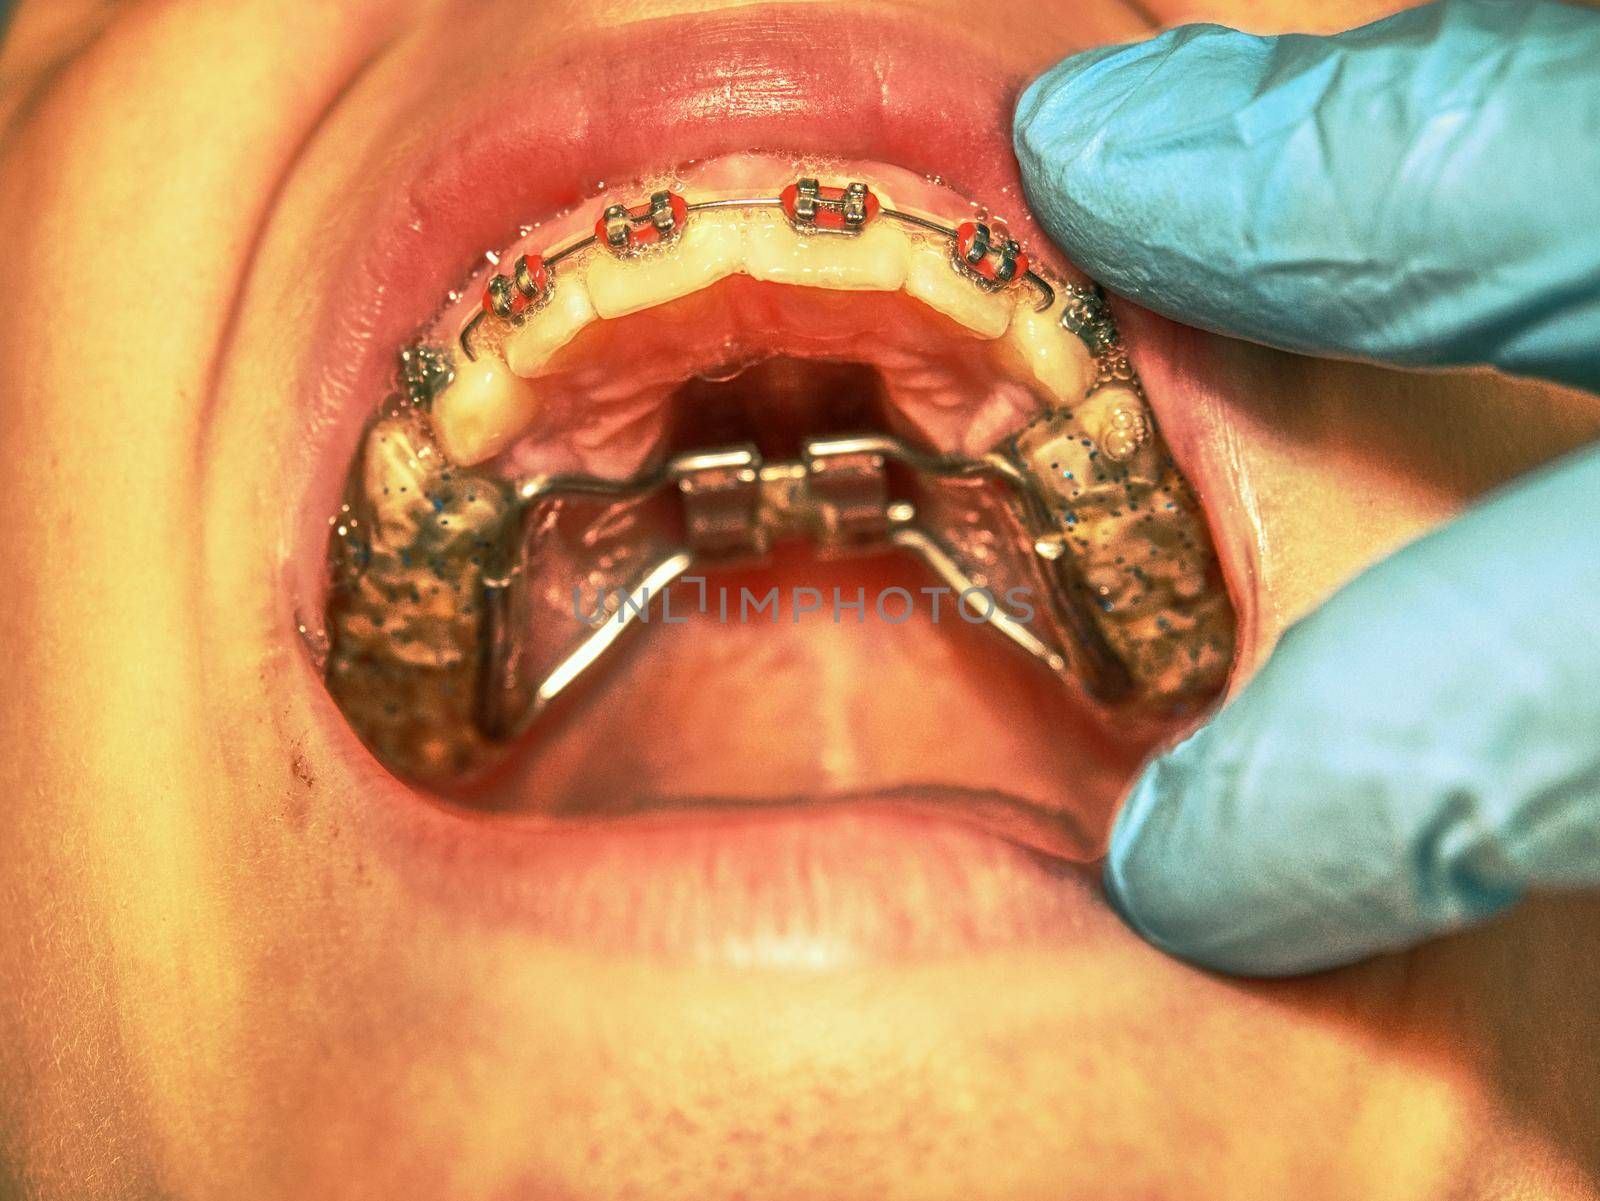 Teen with braces on his teeth. Macro shot of teeth with braces. by rdonar2